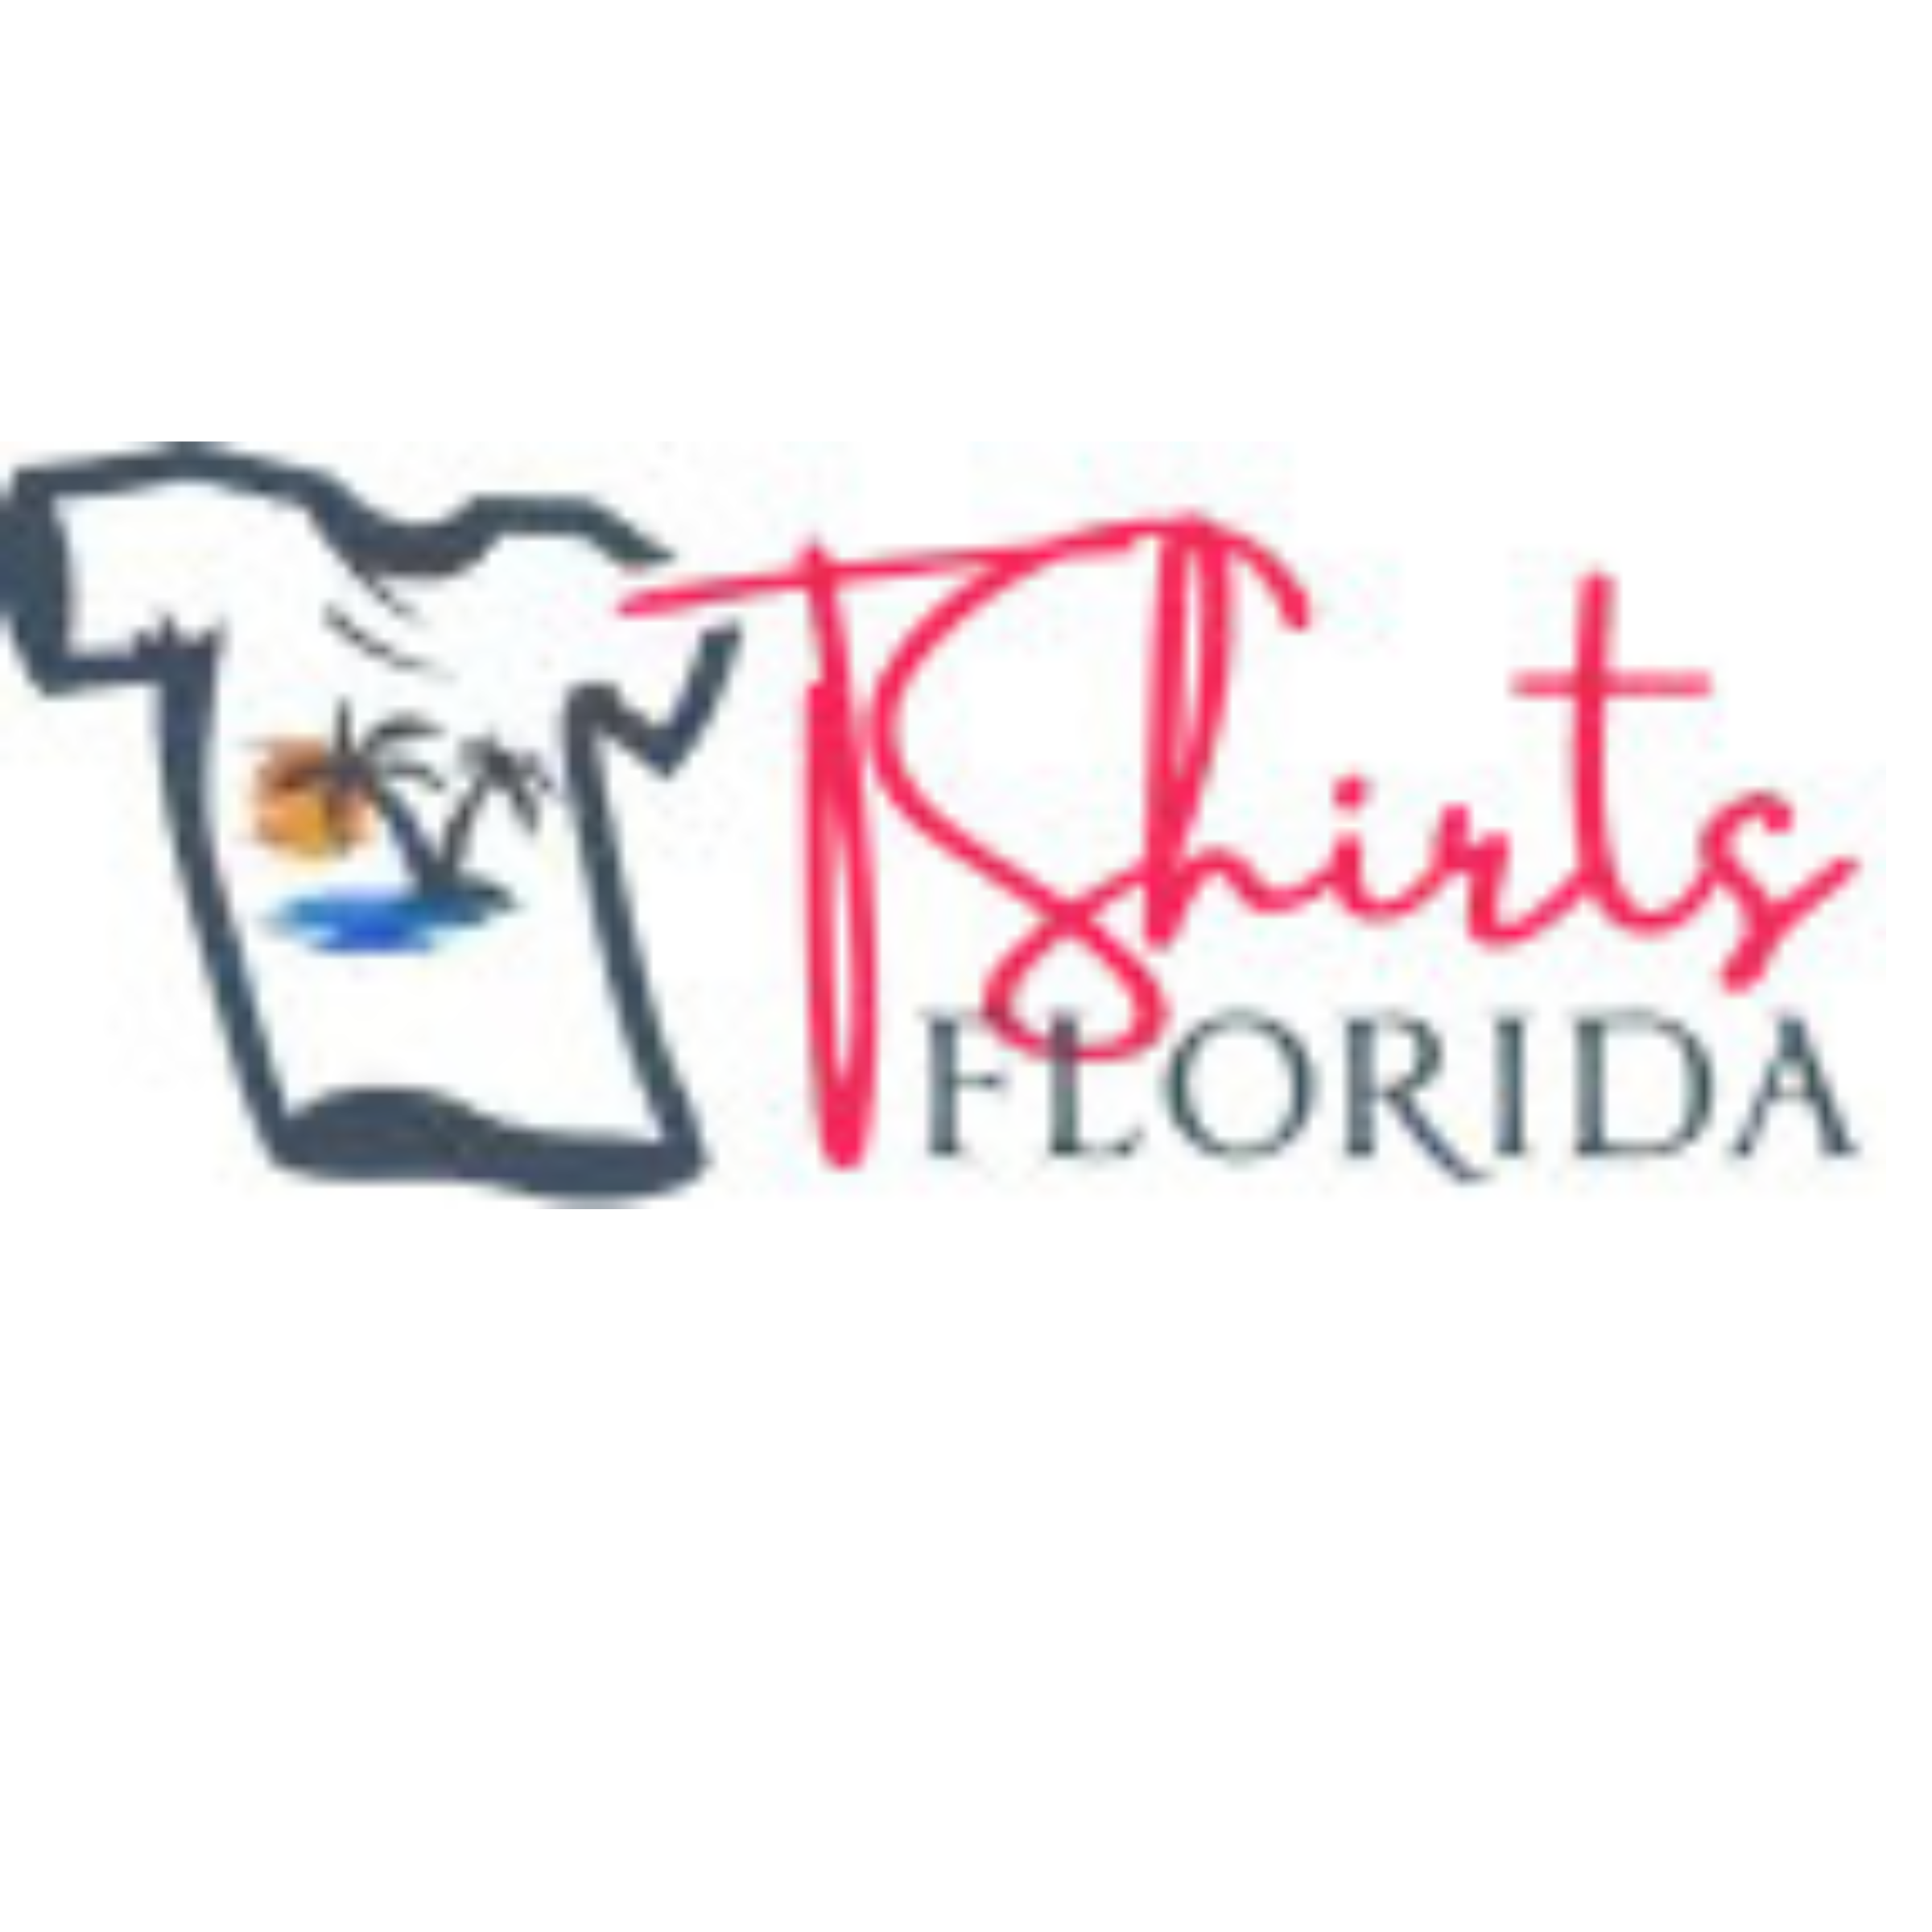 Tshirts Floridaa